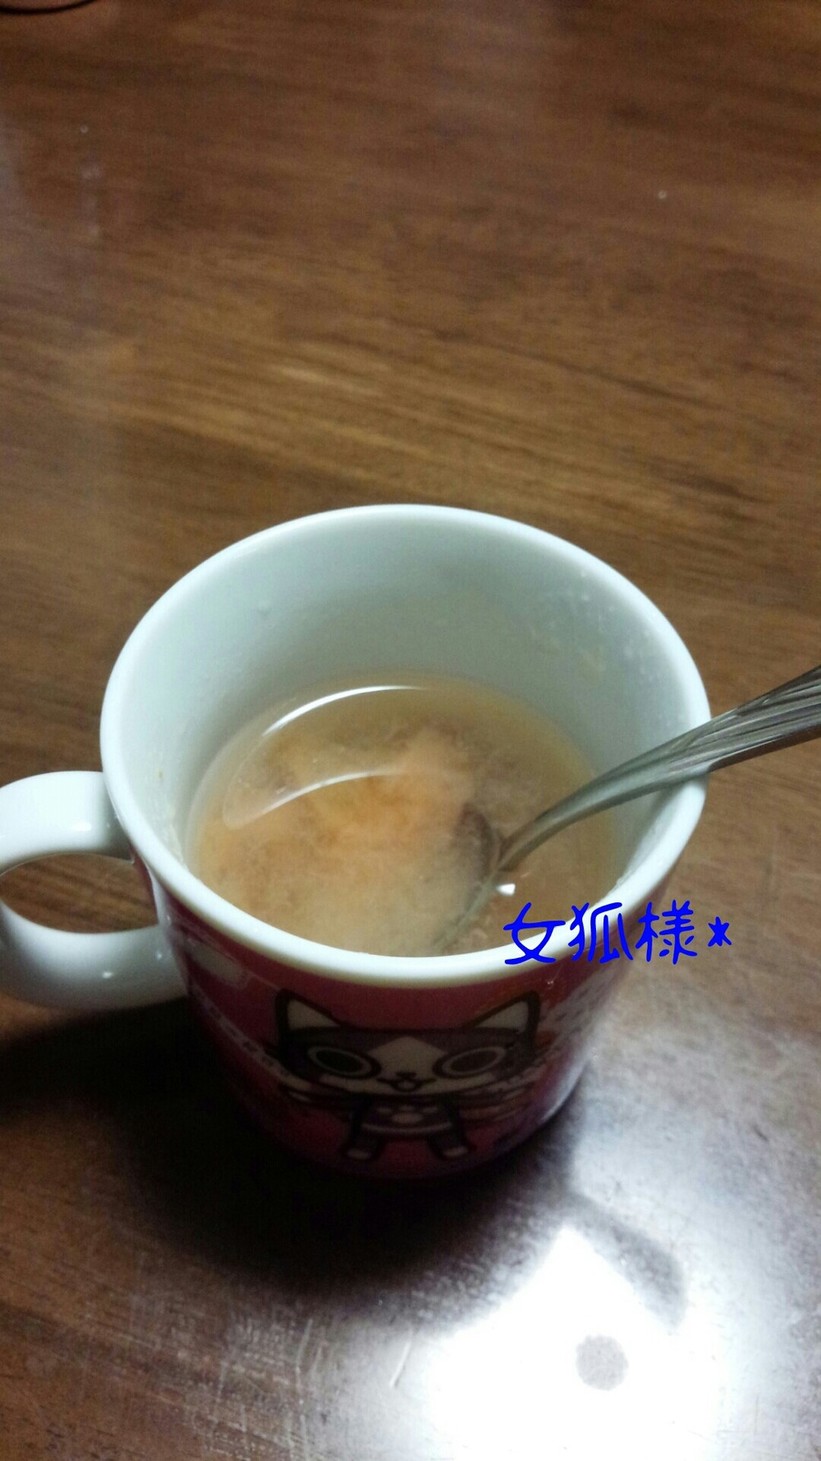 梅茶スティックをアレンジ◆梅湯◆節約の画像